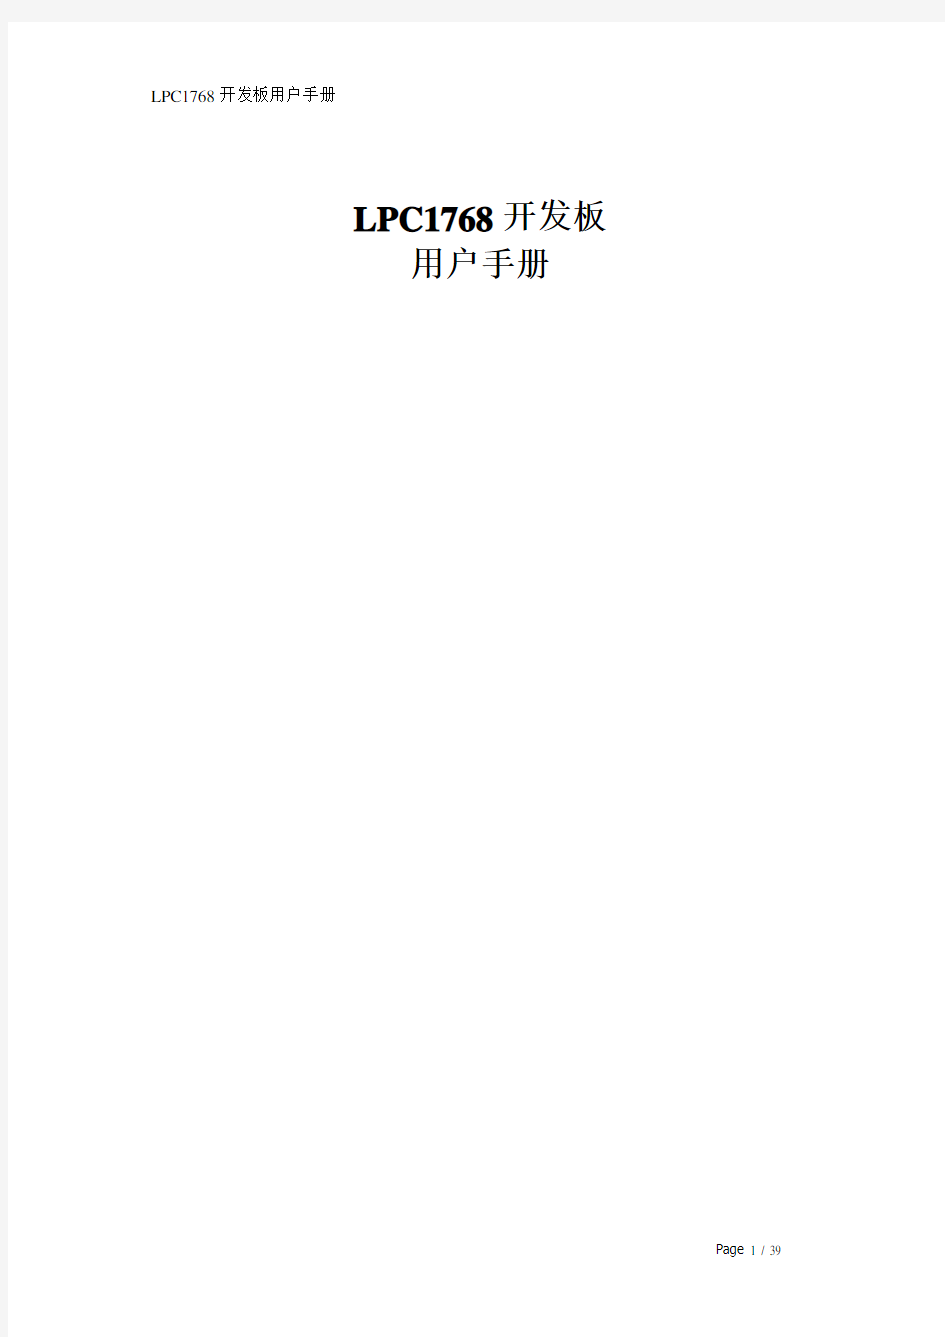 LPC1768开发板用户手册